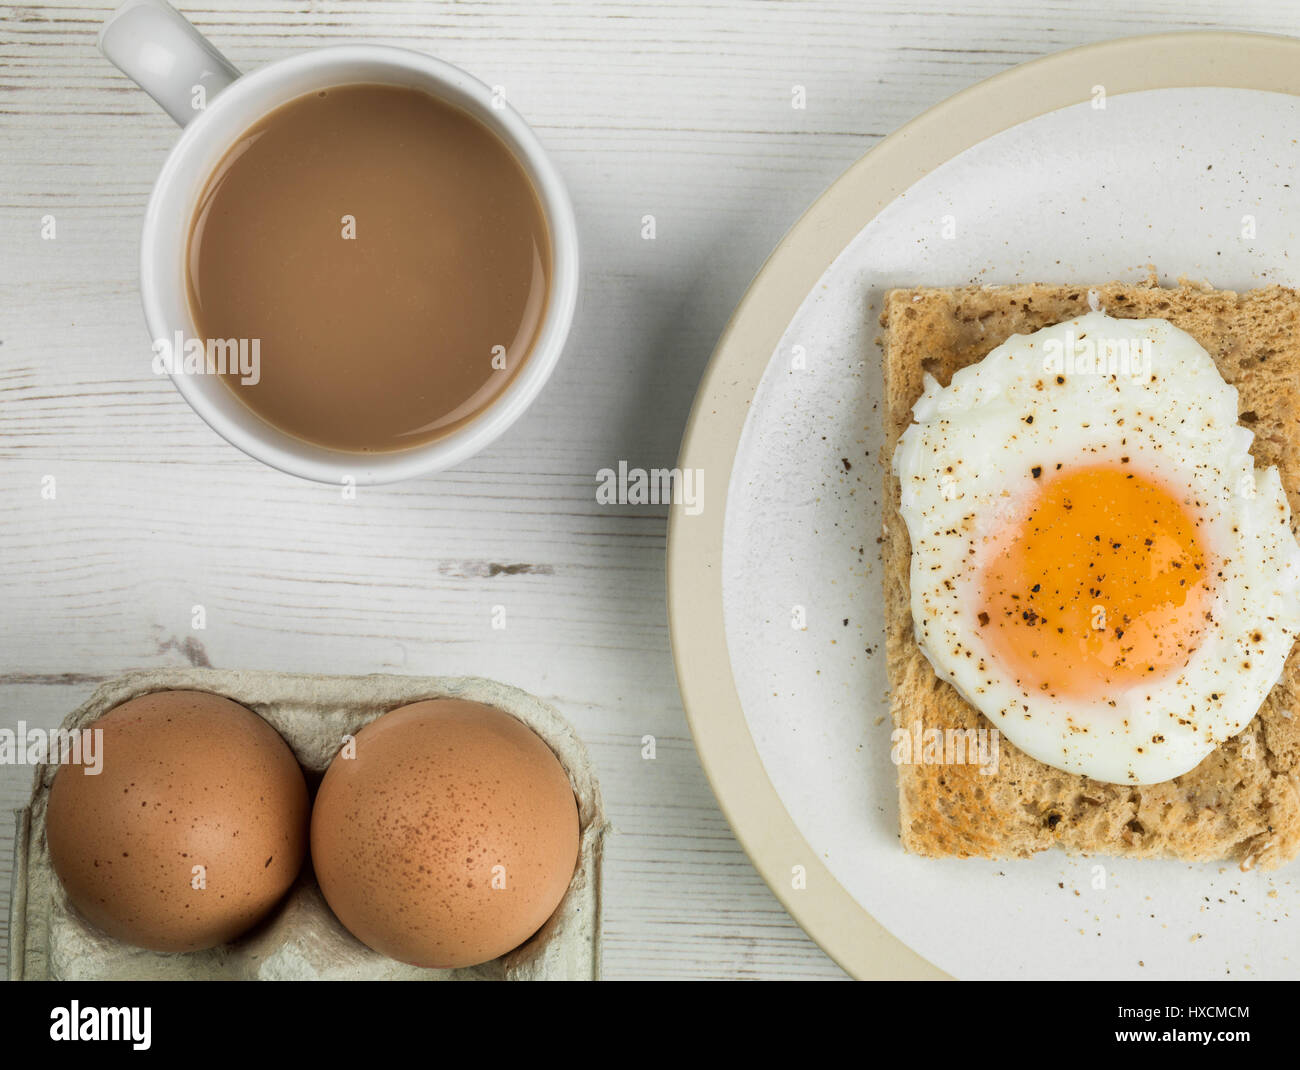 Piano di composizione dei laici e strette del raccolto di un uovo in camicia su Toast, Sunny Side Up, prima colazione con una tazza di tè o caffè e due uova crude nei loro gusci Foto Stock